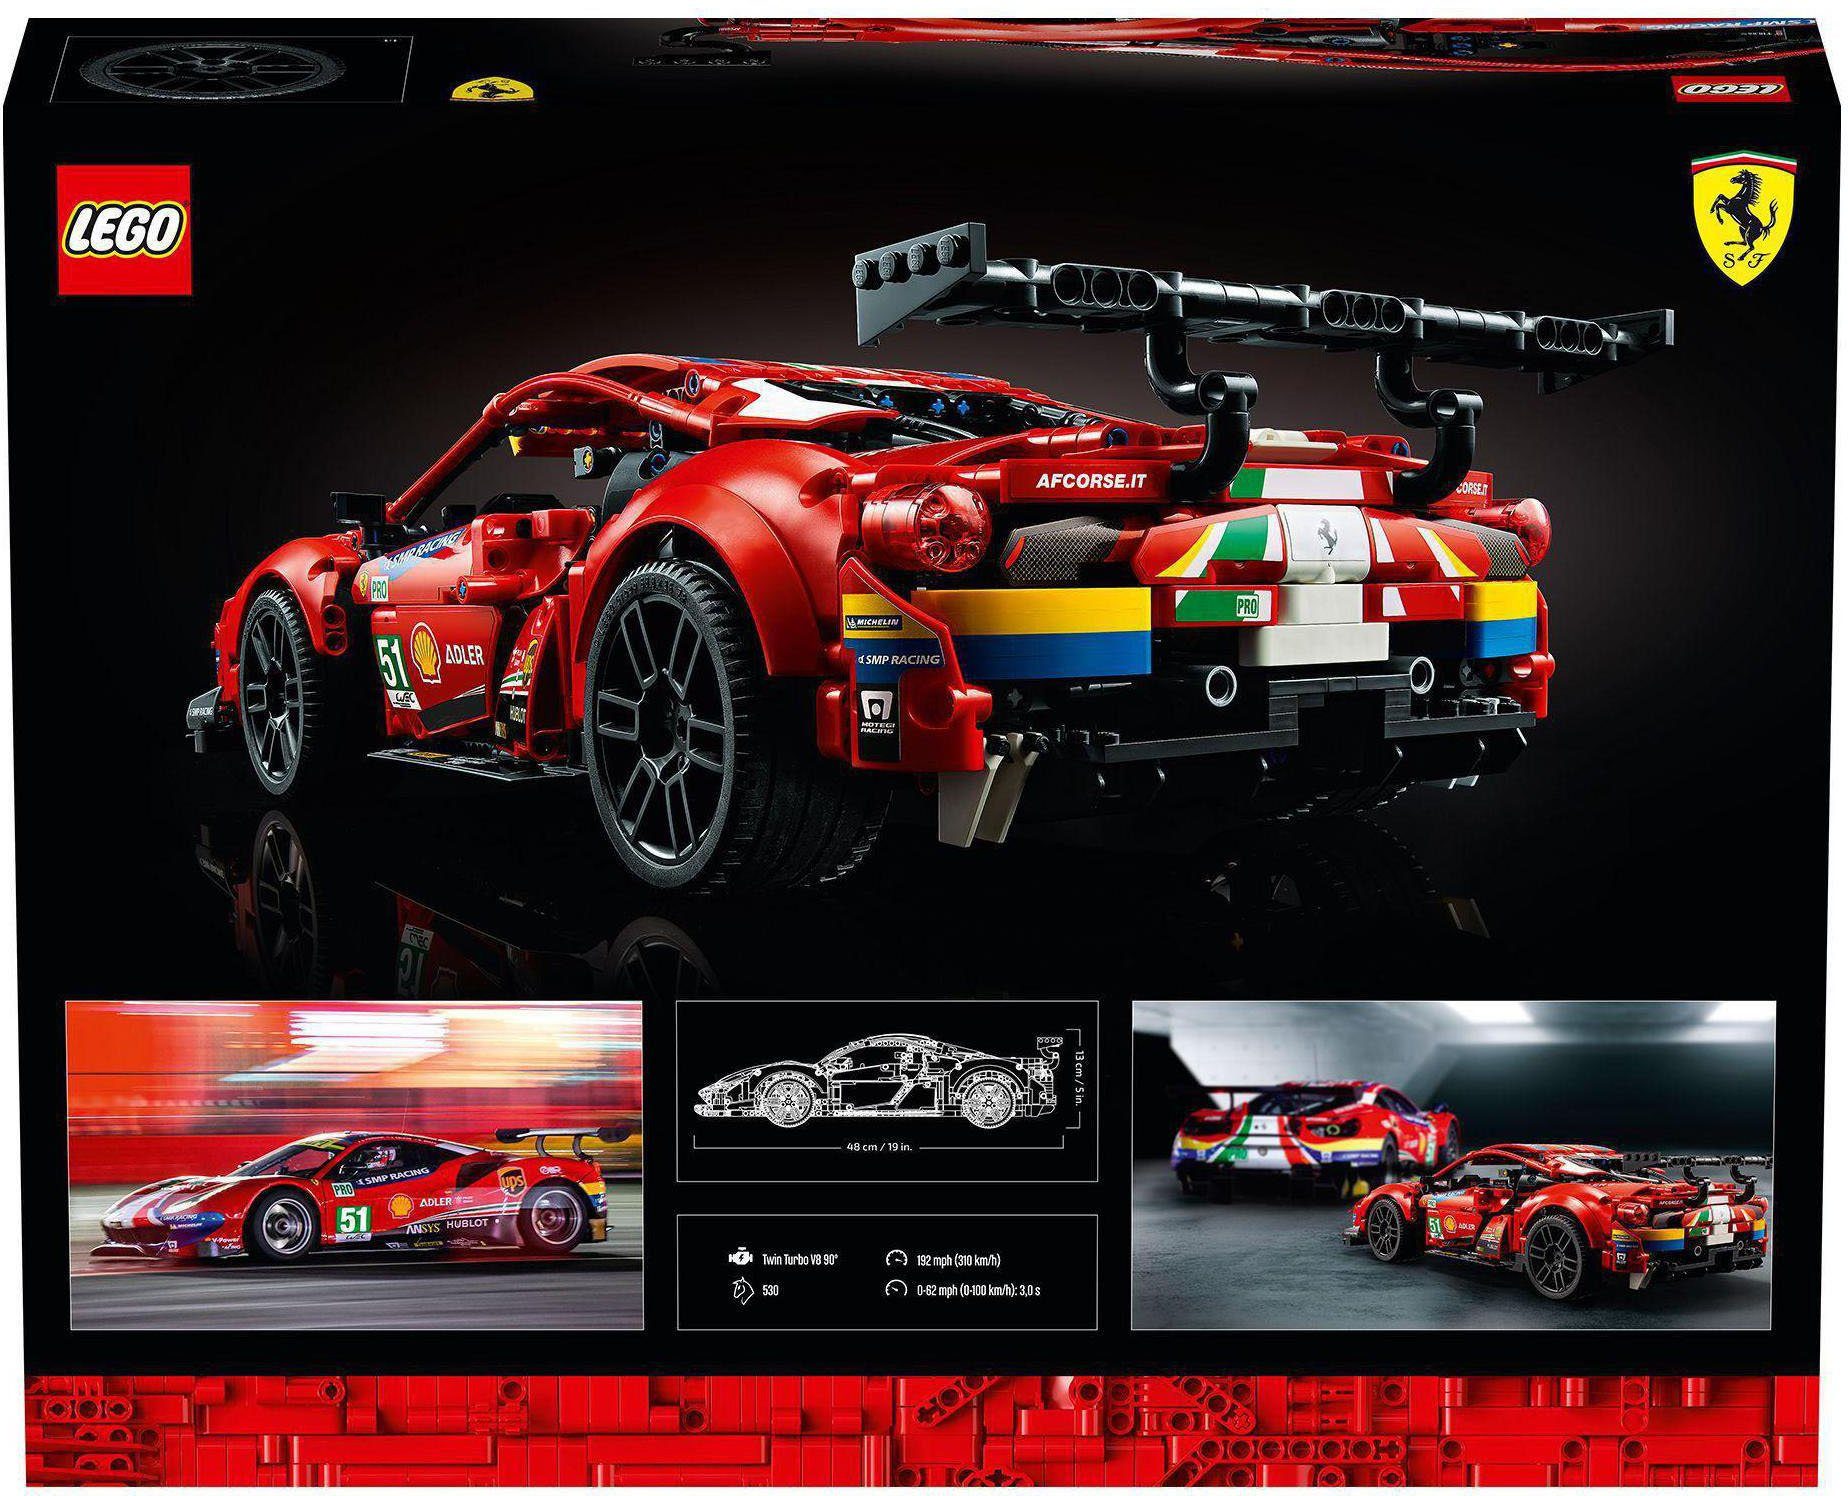 LEGO® LEGO® #51” (42125), Corse 488 Europe GTE Ferrari Made in Konstruktionsspielsteine St), (1682 “AF Technic,